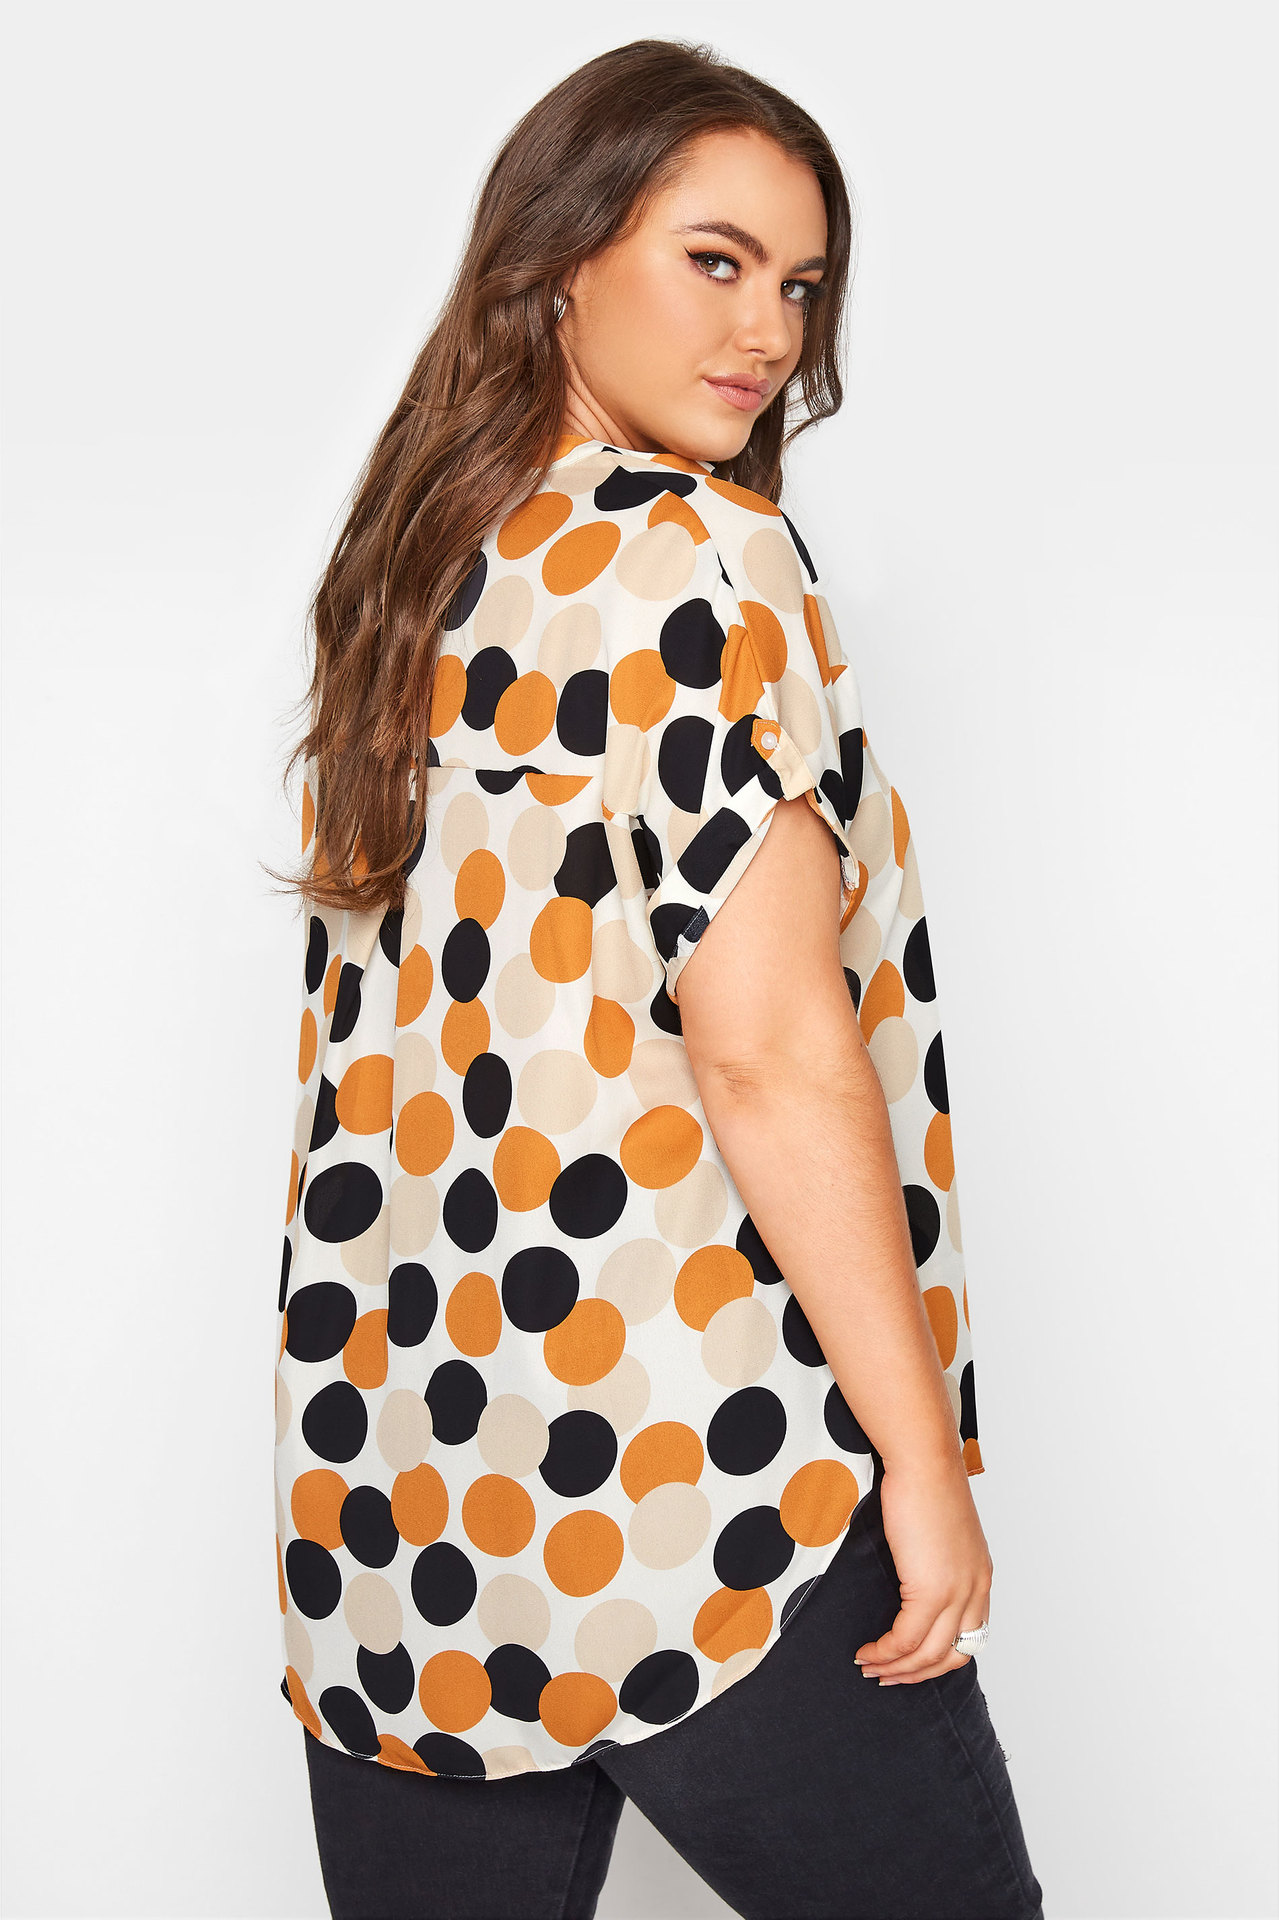 SHEIN Blouses Plus Size Pullover Polka Dot leopard Women Blouse 5XL